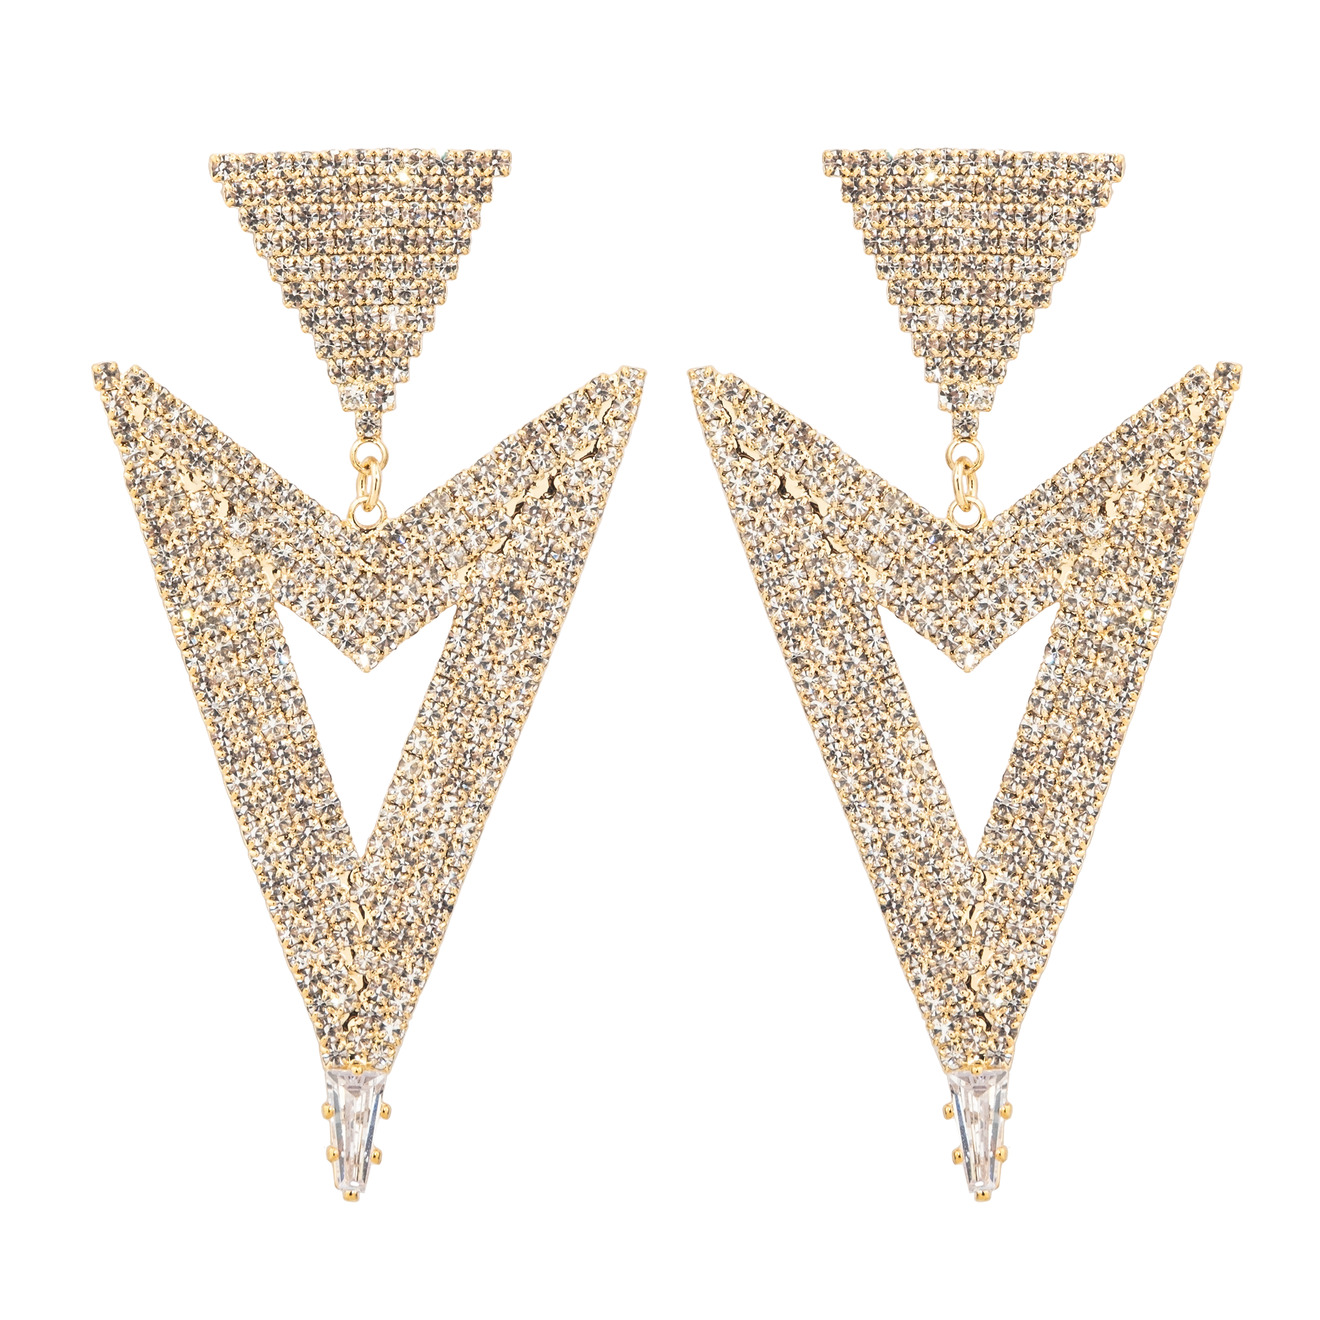 Herald Percy Золотистые серьги-стрелки с кристаллами herald percy золотистые серьги кресты с кристалами